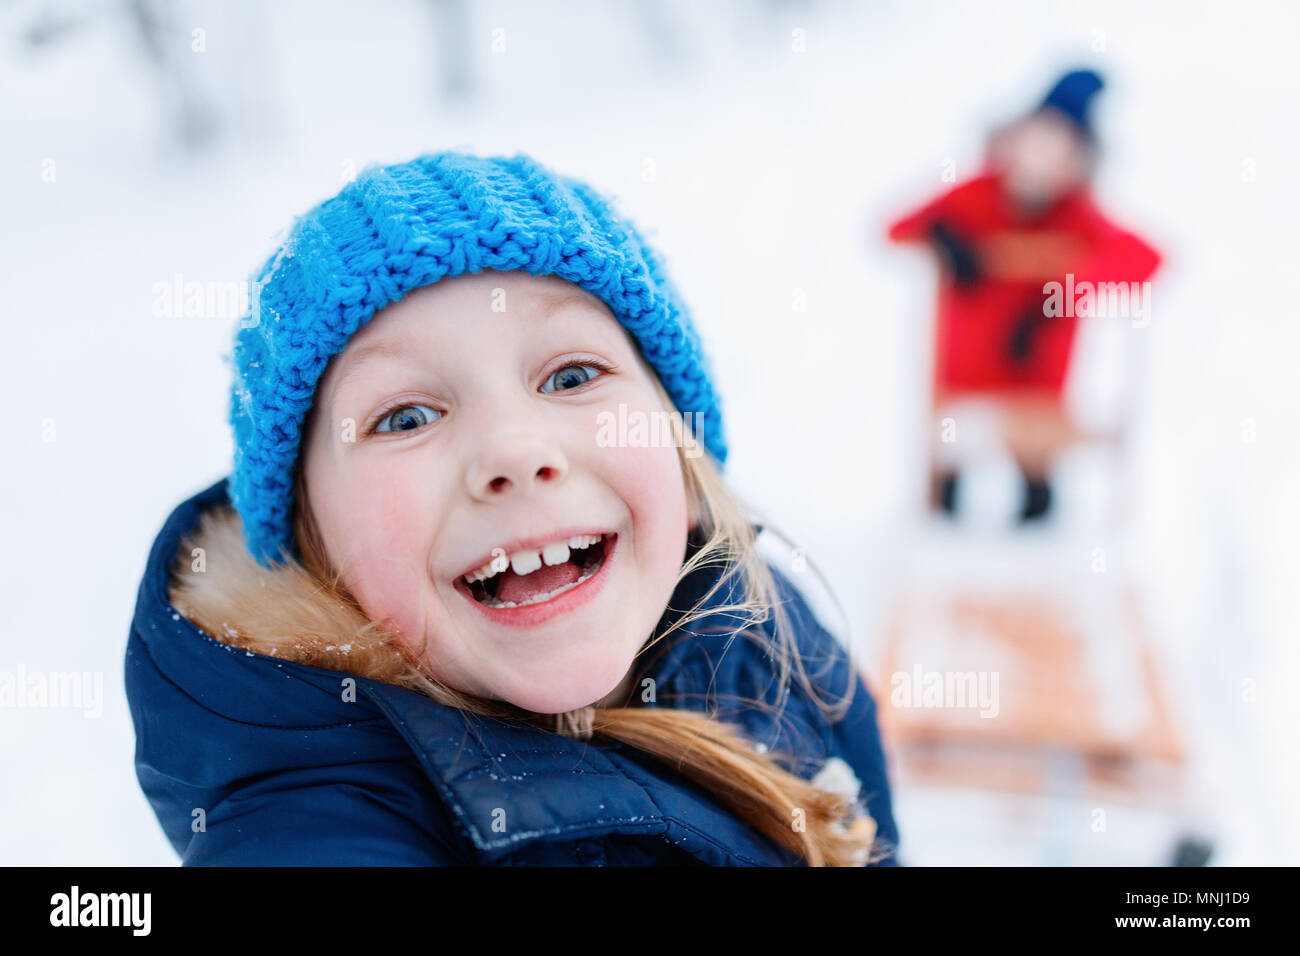 Cute adorable kleinen Mädchen und Jungen im Freien am Weihnachtstag Spaß Rodeln im Schnee Stockfoto